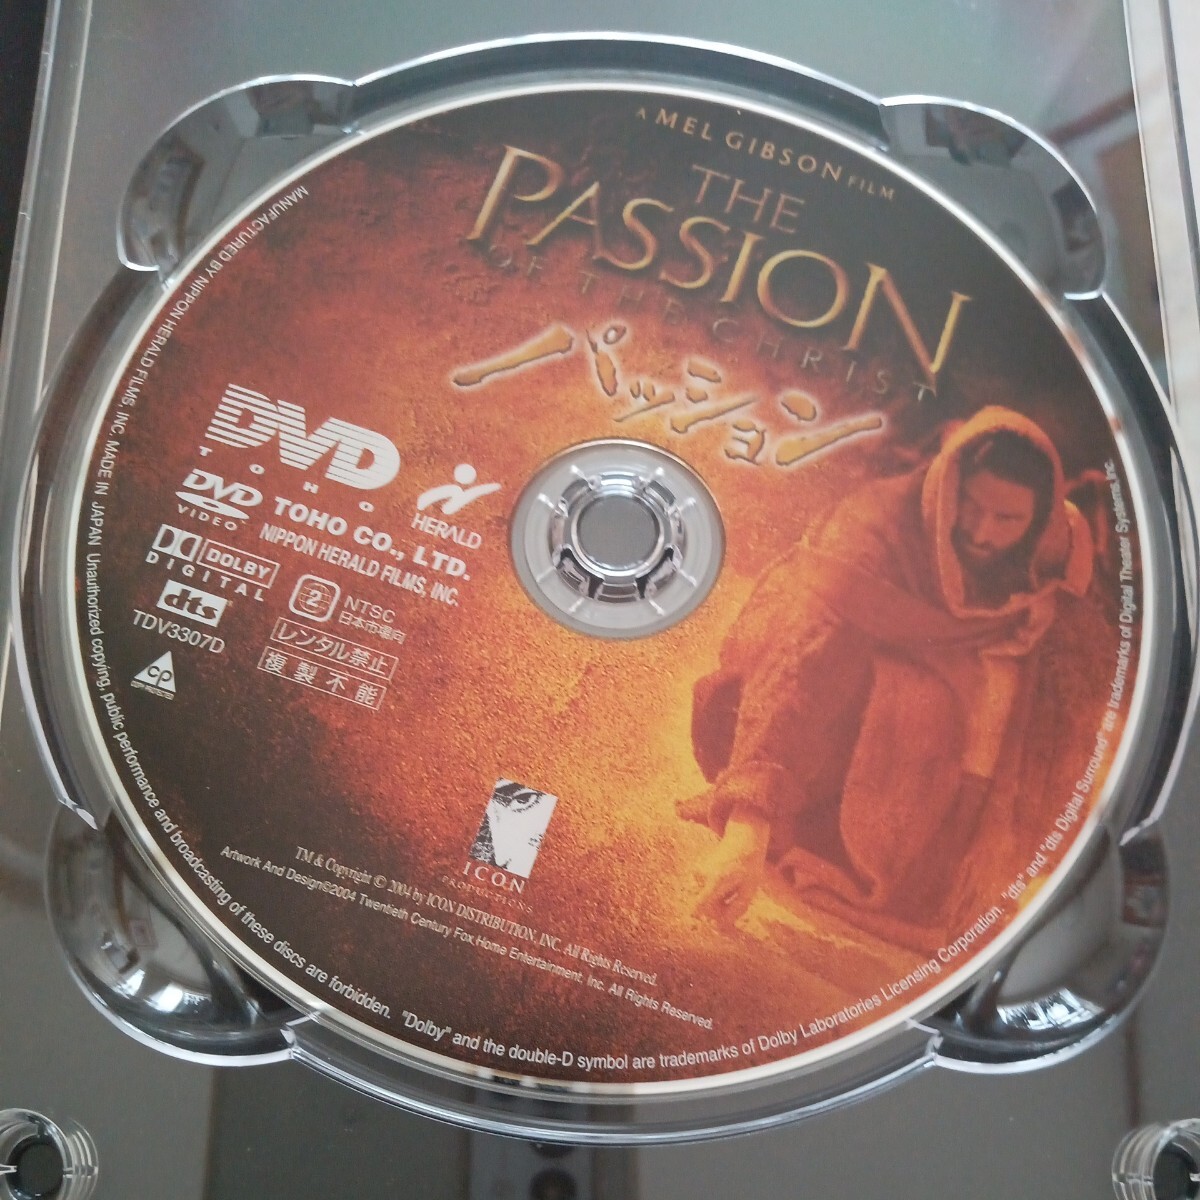 パッション DVD メル ギブソン監督 ジム カヴィーゼル DVD 中古品の画像5